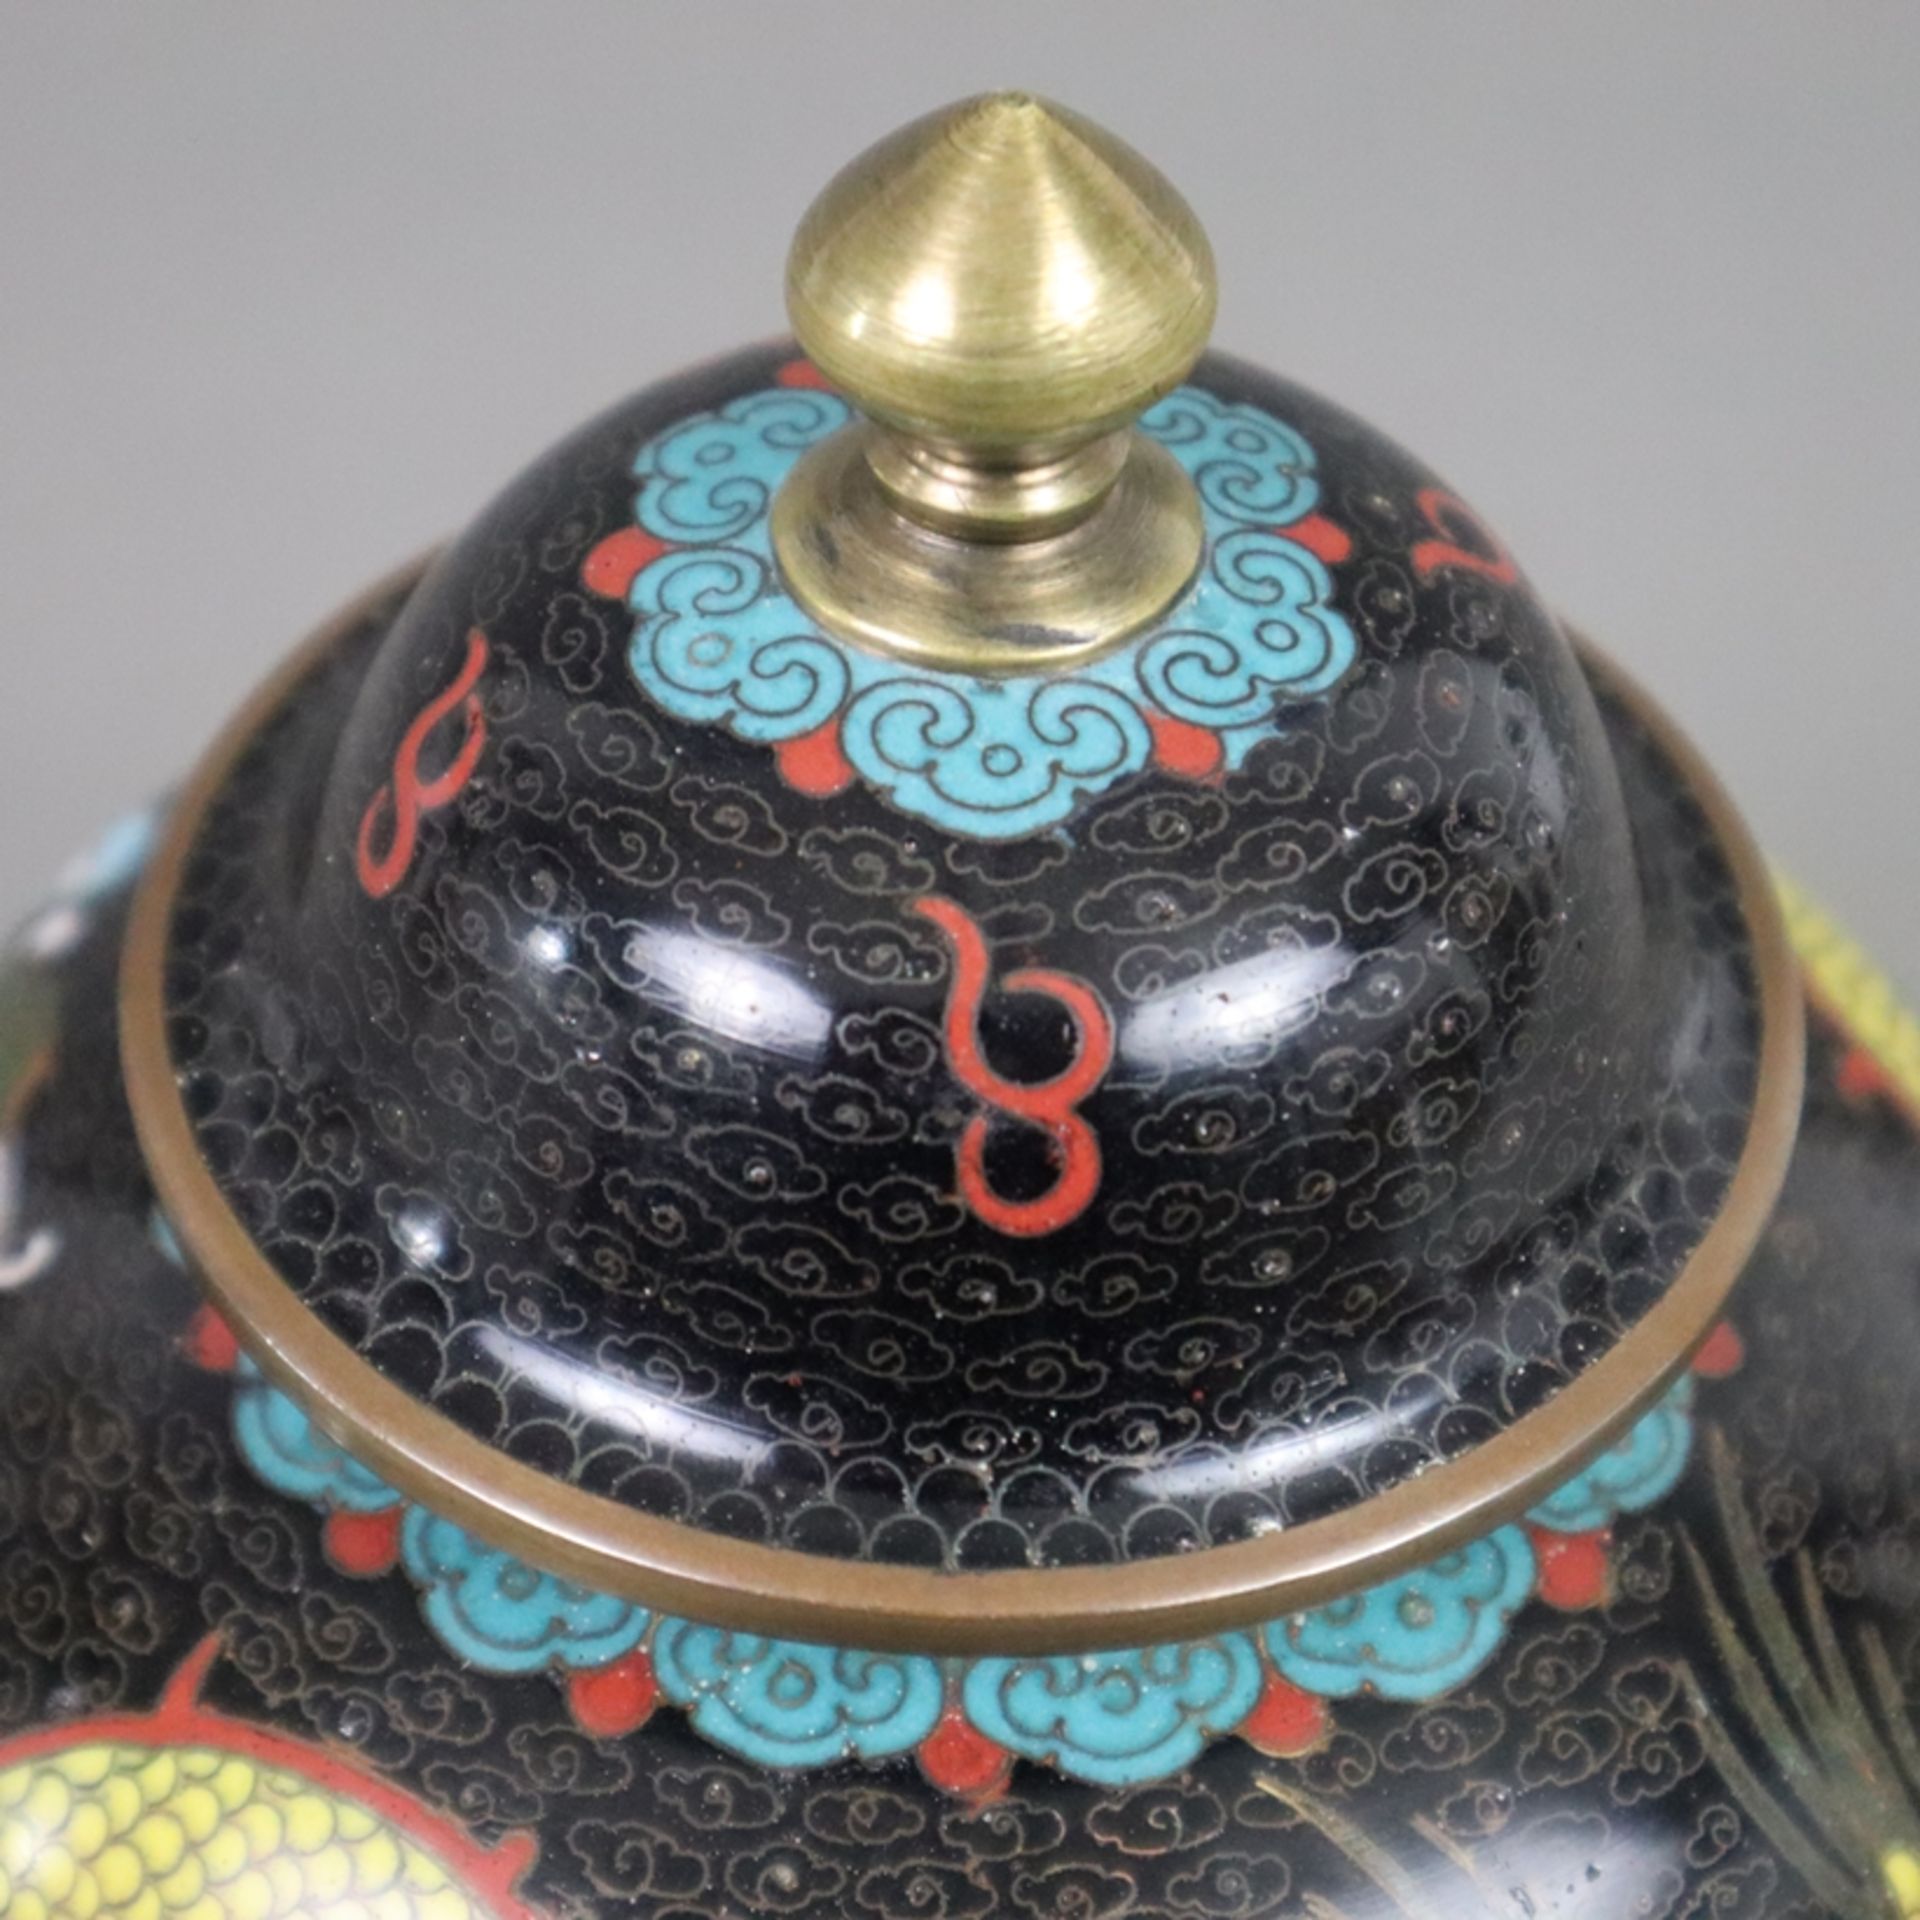 Cloisonné-Deckelvase mit Drachendekor - China, 20. Jh., Bronzelegierung, polychromes Email-Cloisonn - Bild 5 aus 7